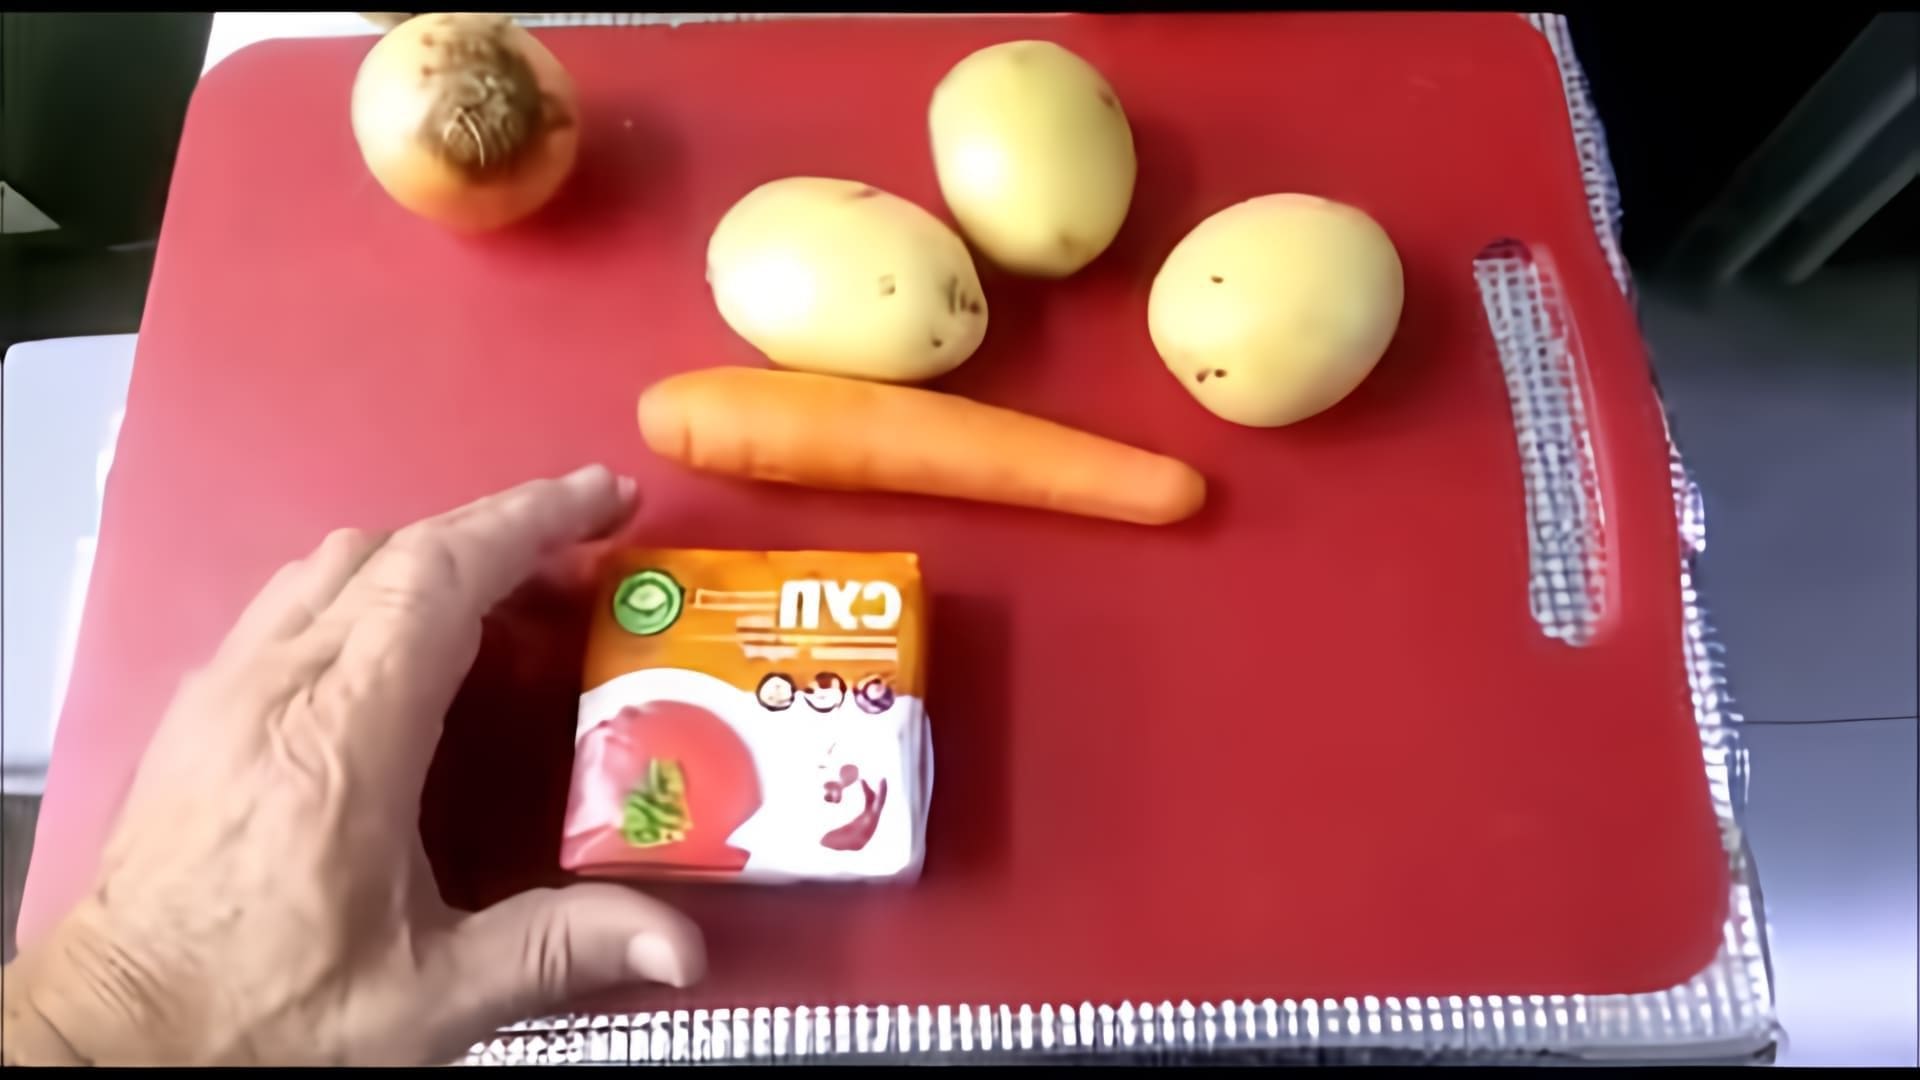 В этом видео-ролике #папа_шеф_повар делится своим рецептом приготовления супа Харчо